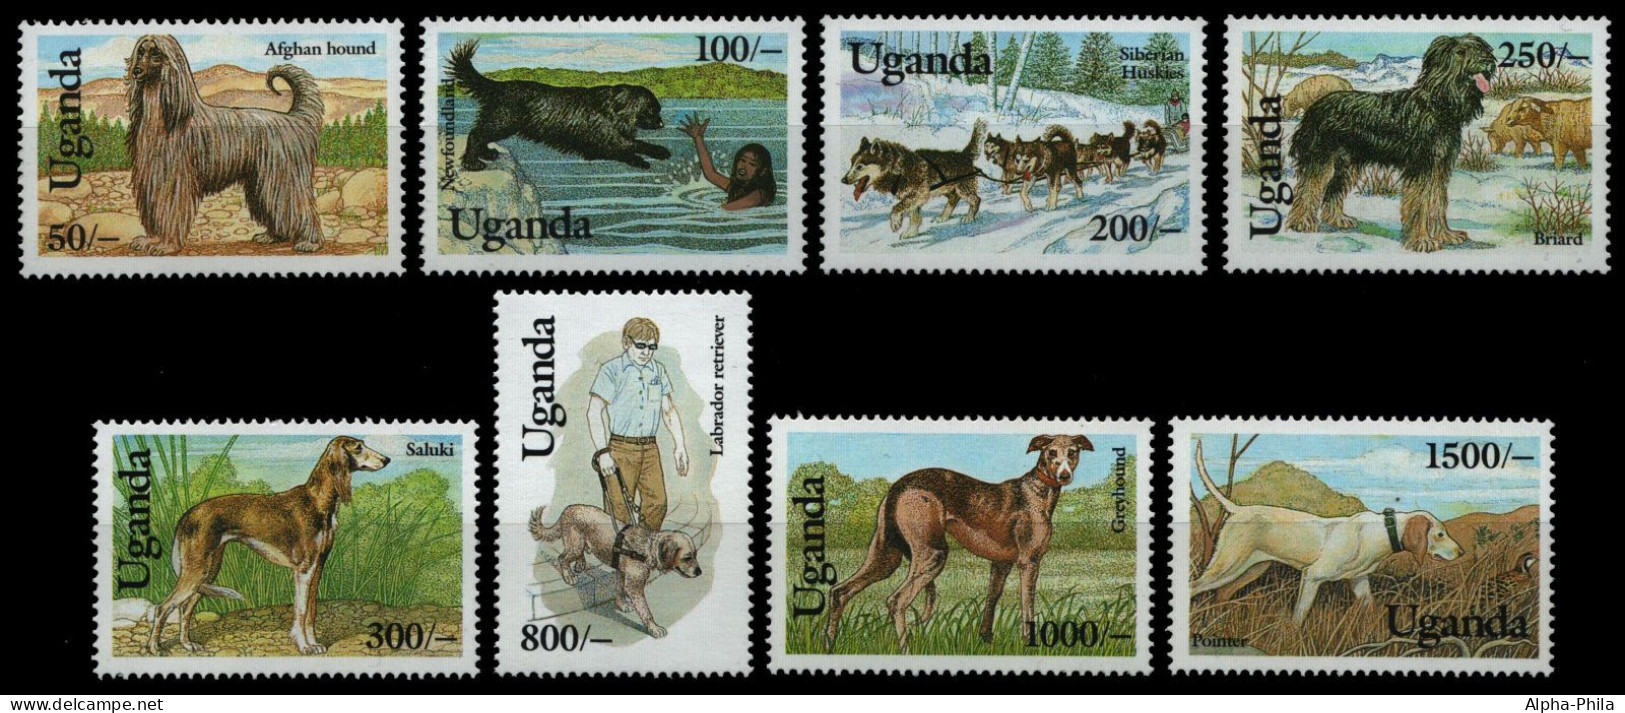 Uganda 1993 - Mi-Nr. 1212-1219 ** - MNH - Hunde / Dogs - Uganda (1962-...)